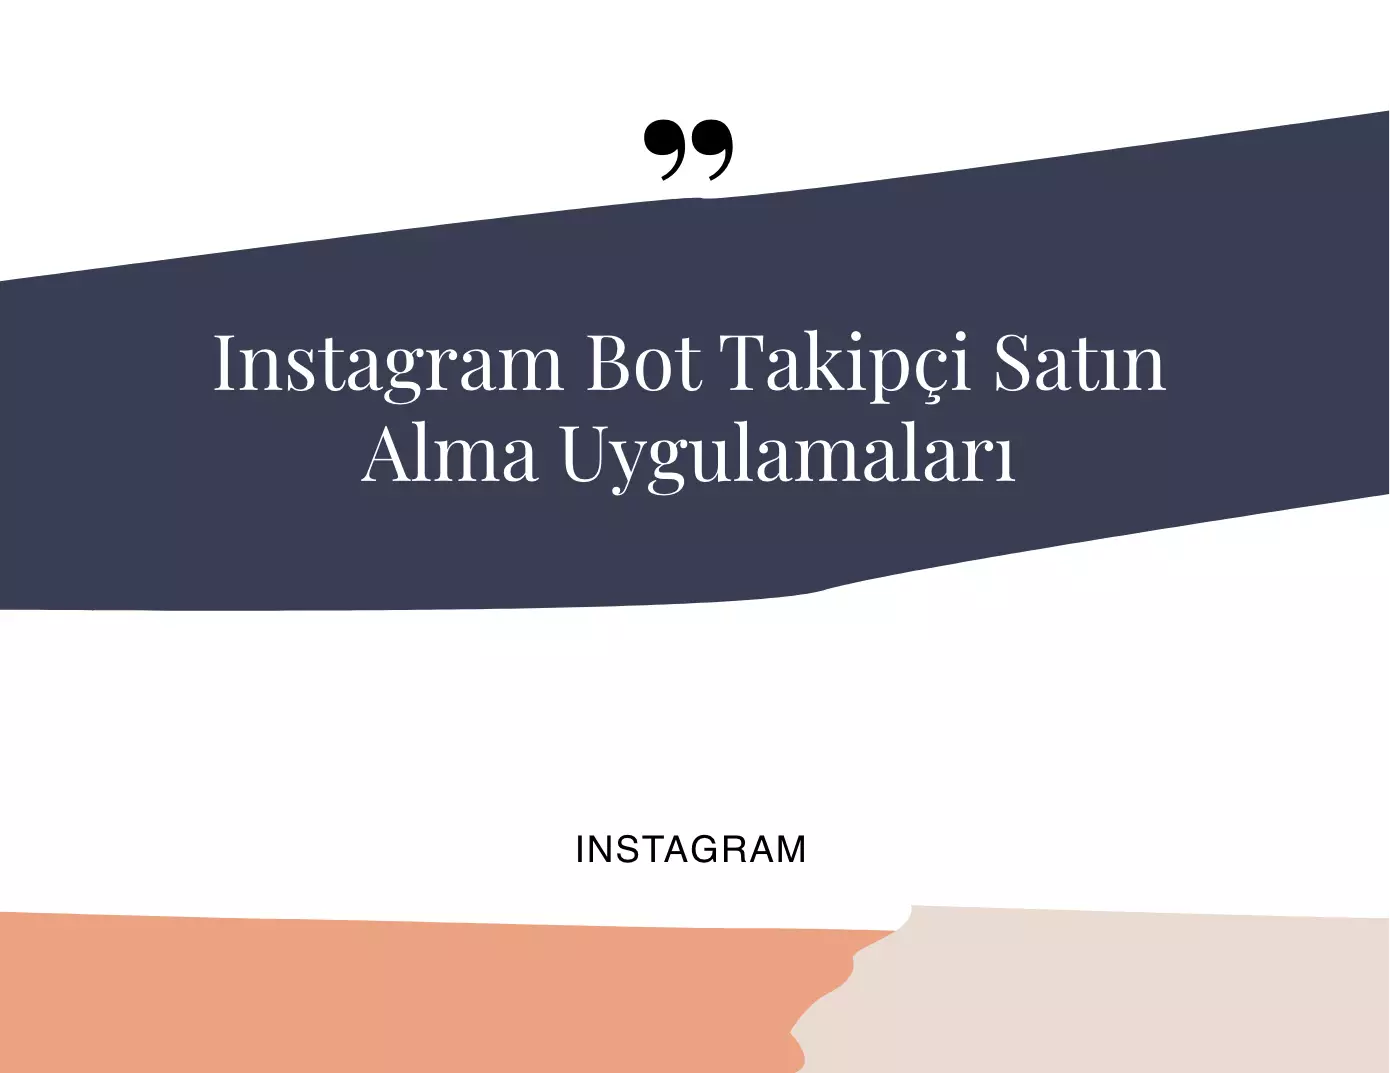 Instagram Bot Takipçi Satın Alma Uygulamaları